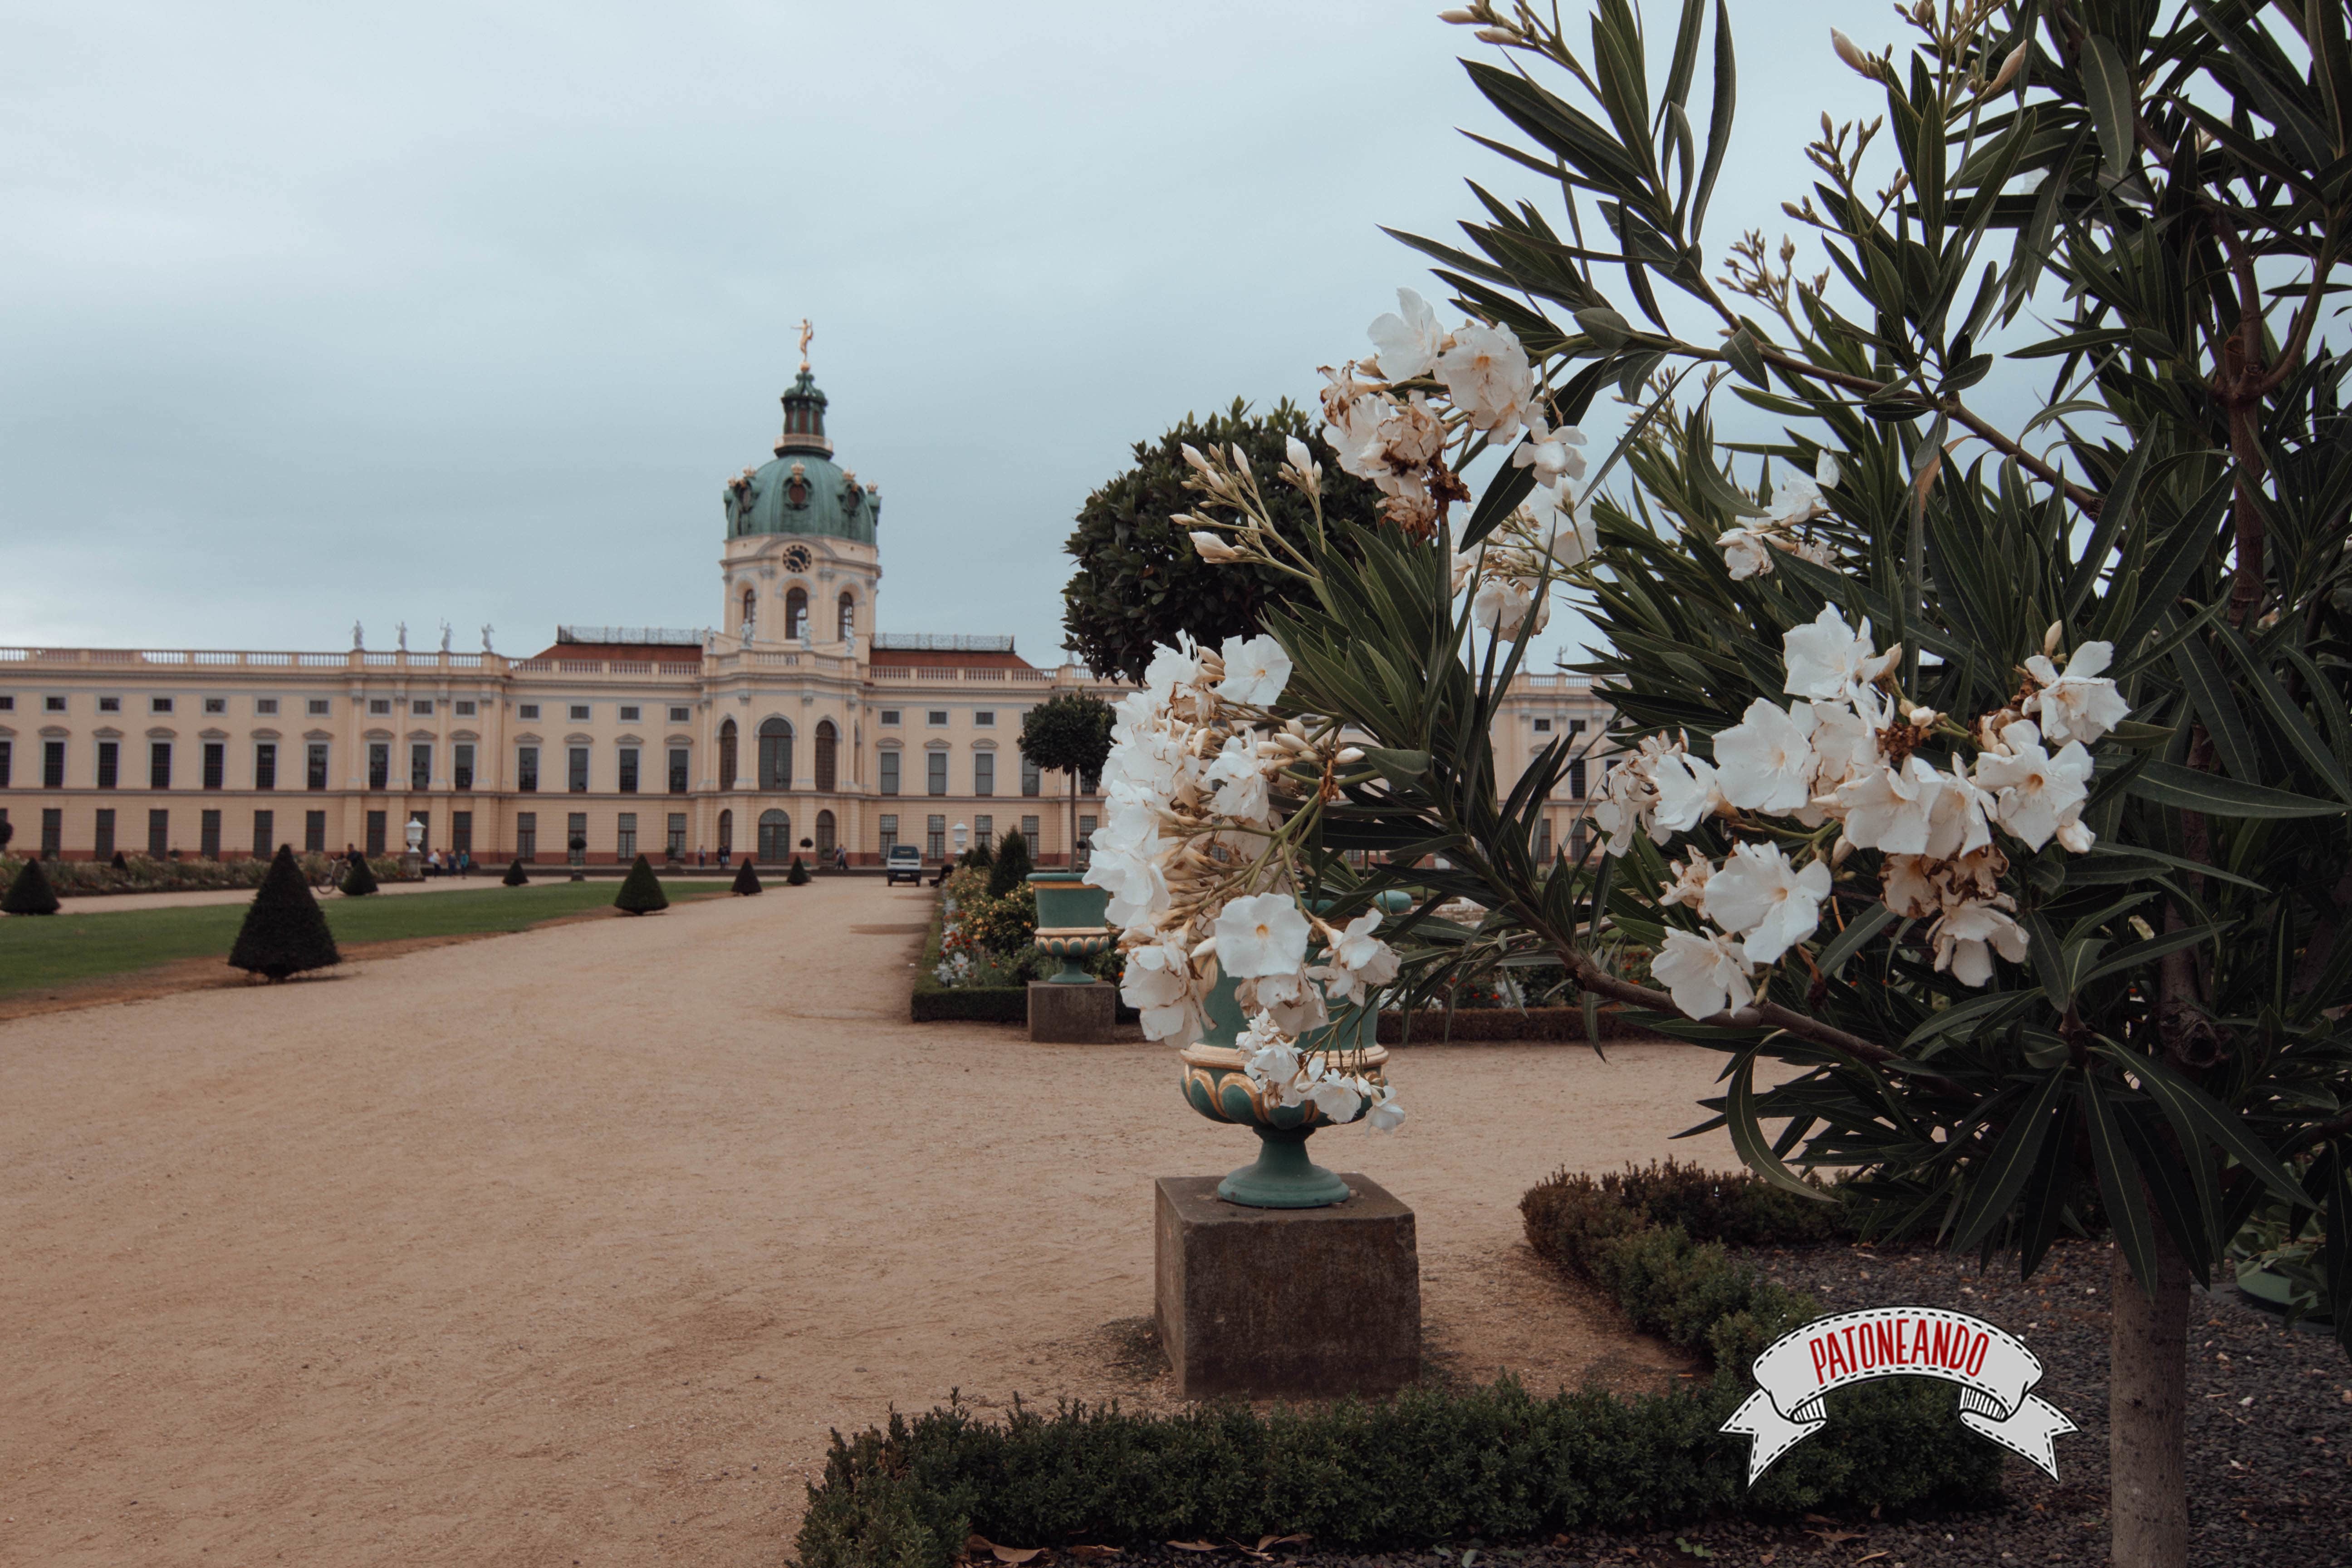 que ver y que hacer en Berlín - Palacio Charlottenburg - Patoneando blog de viajes (10)